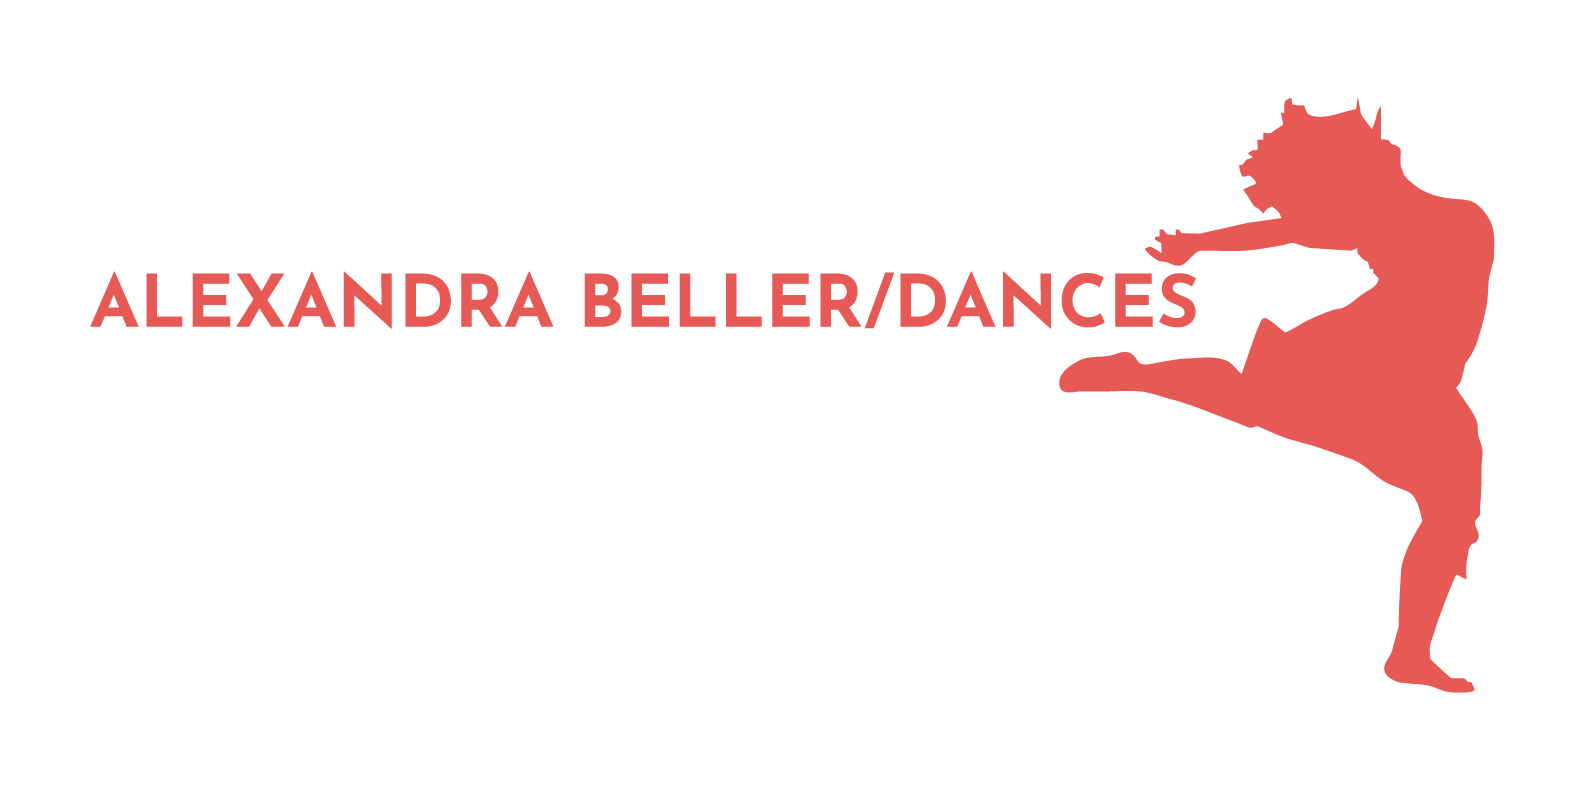 Alexandra Beller/Dances